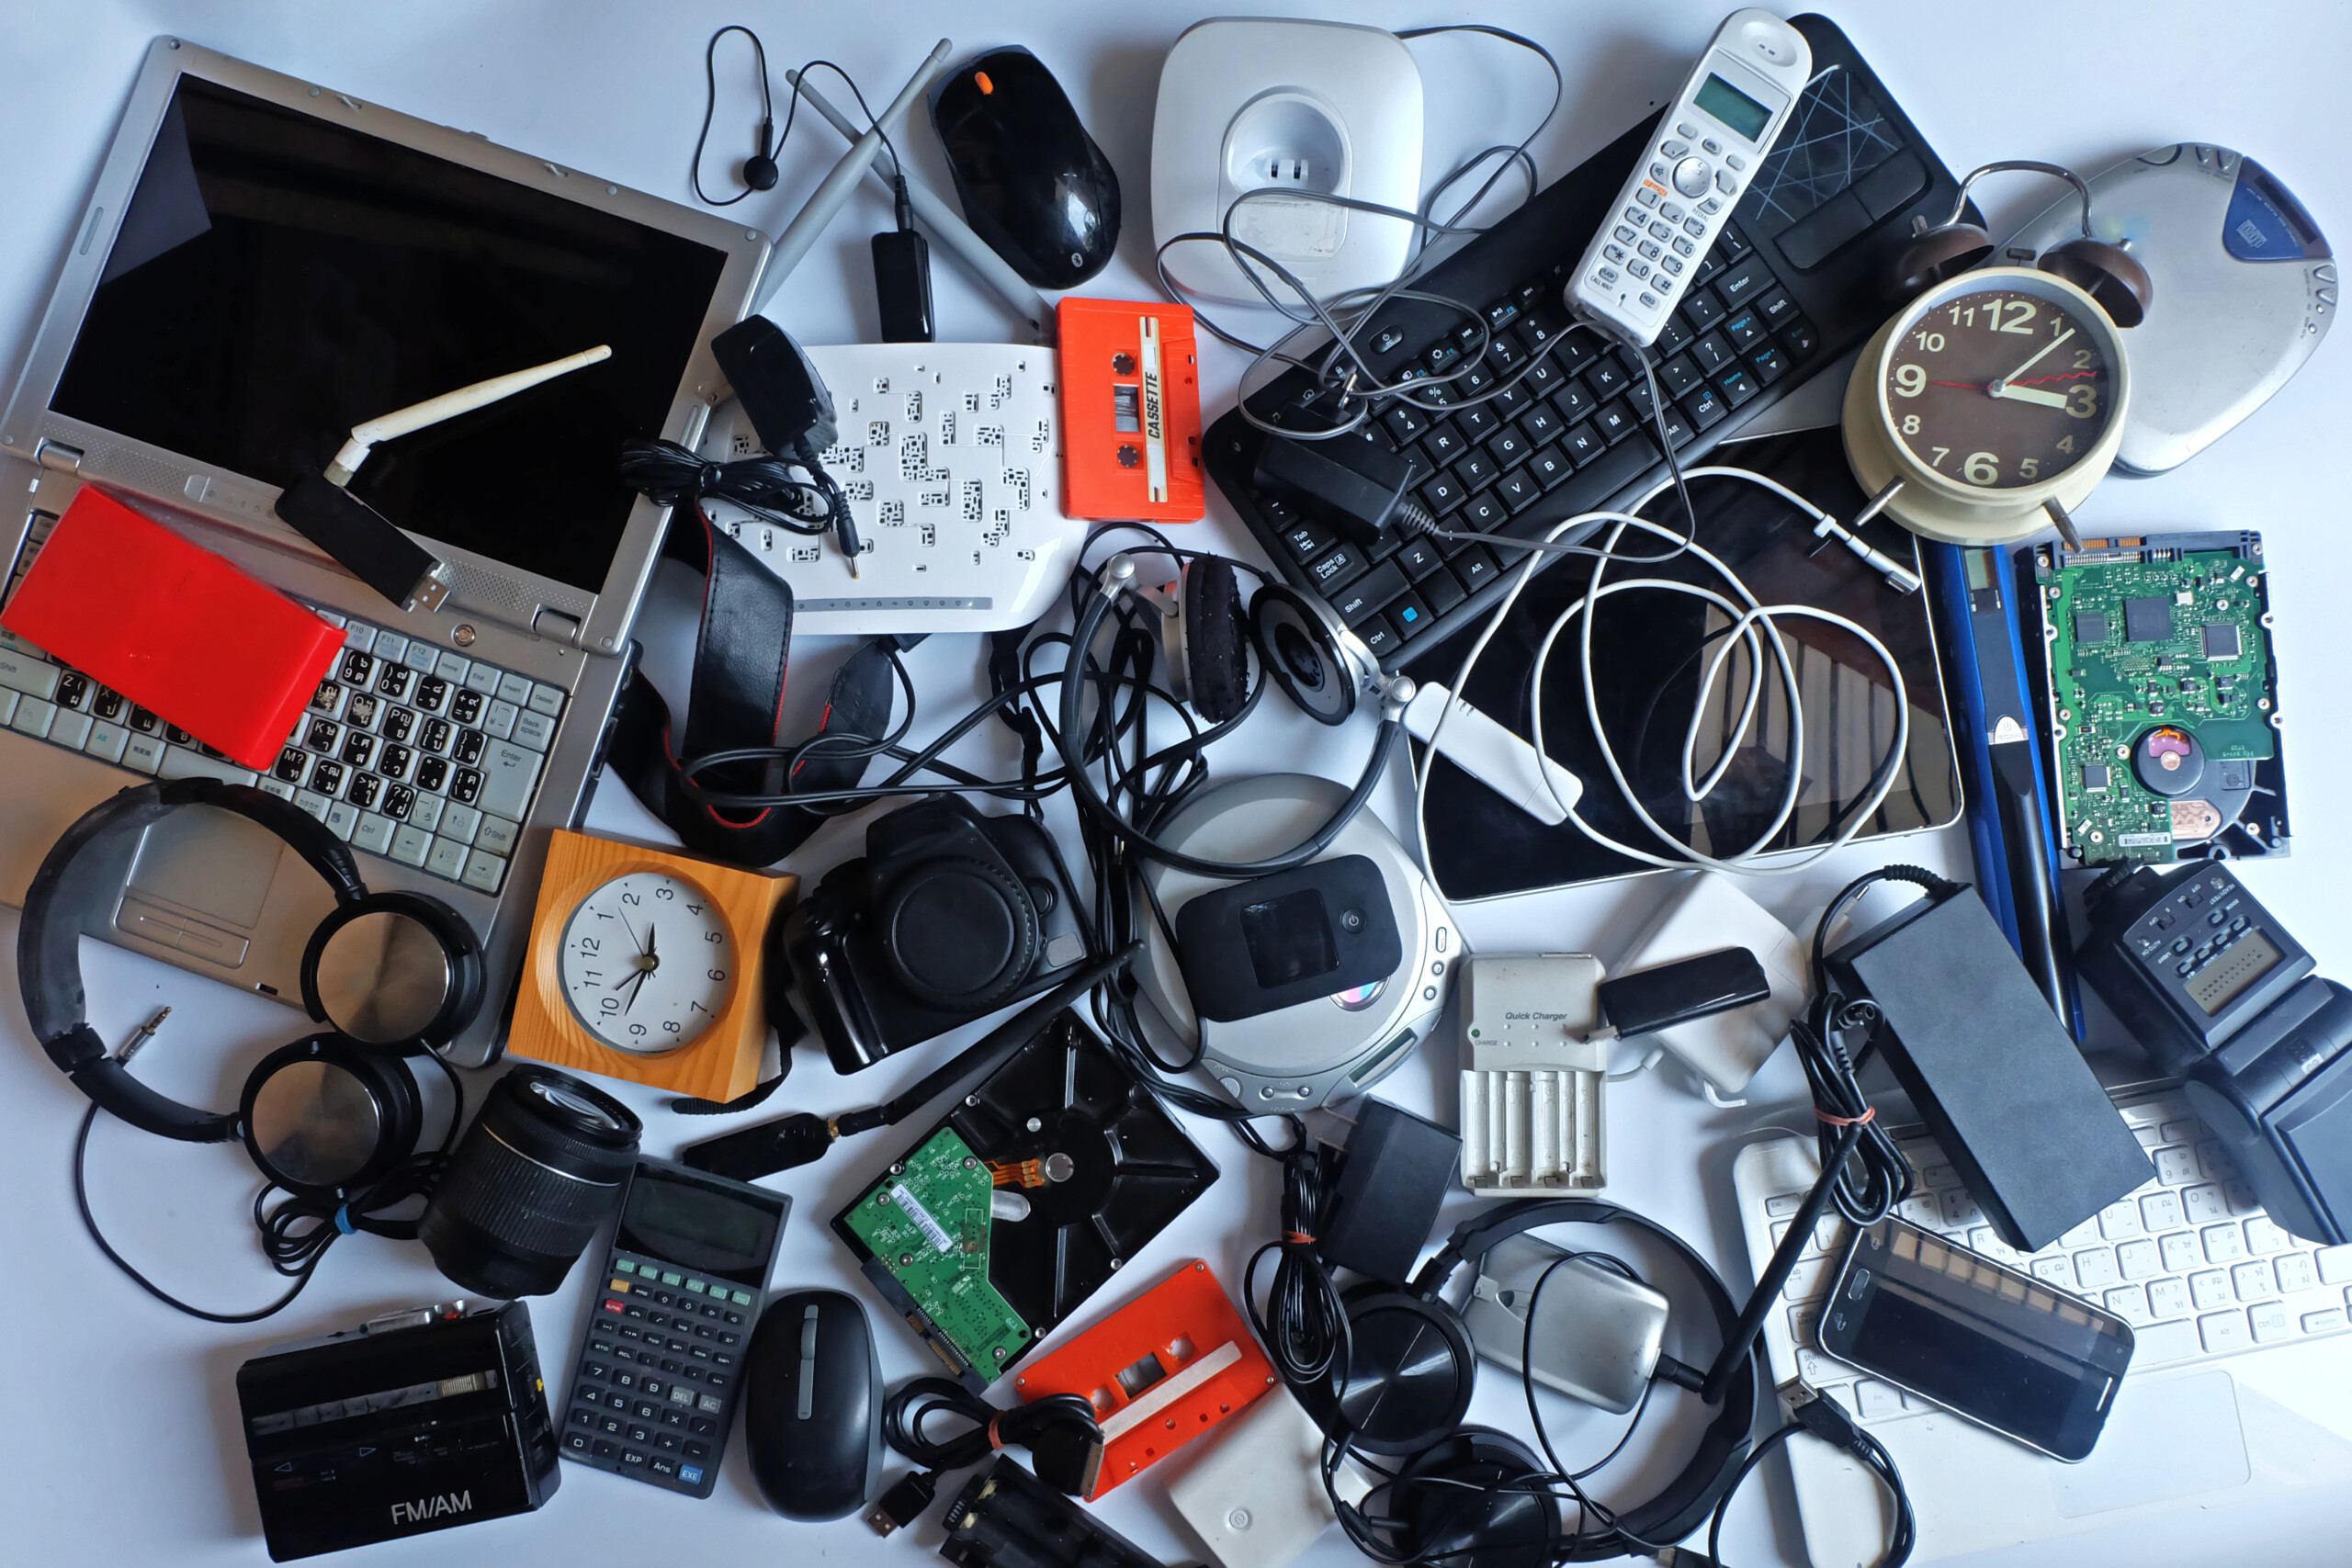 Electronic Waste: A Hidden Environmental Hazard